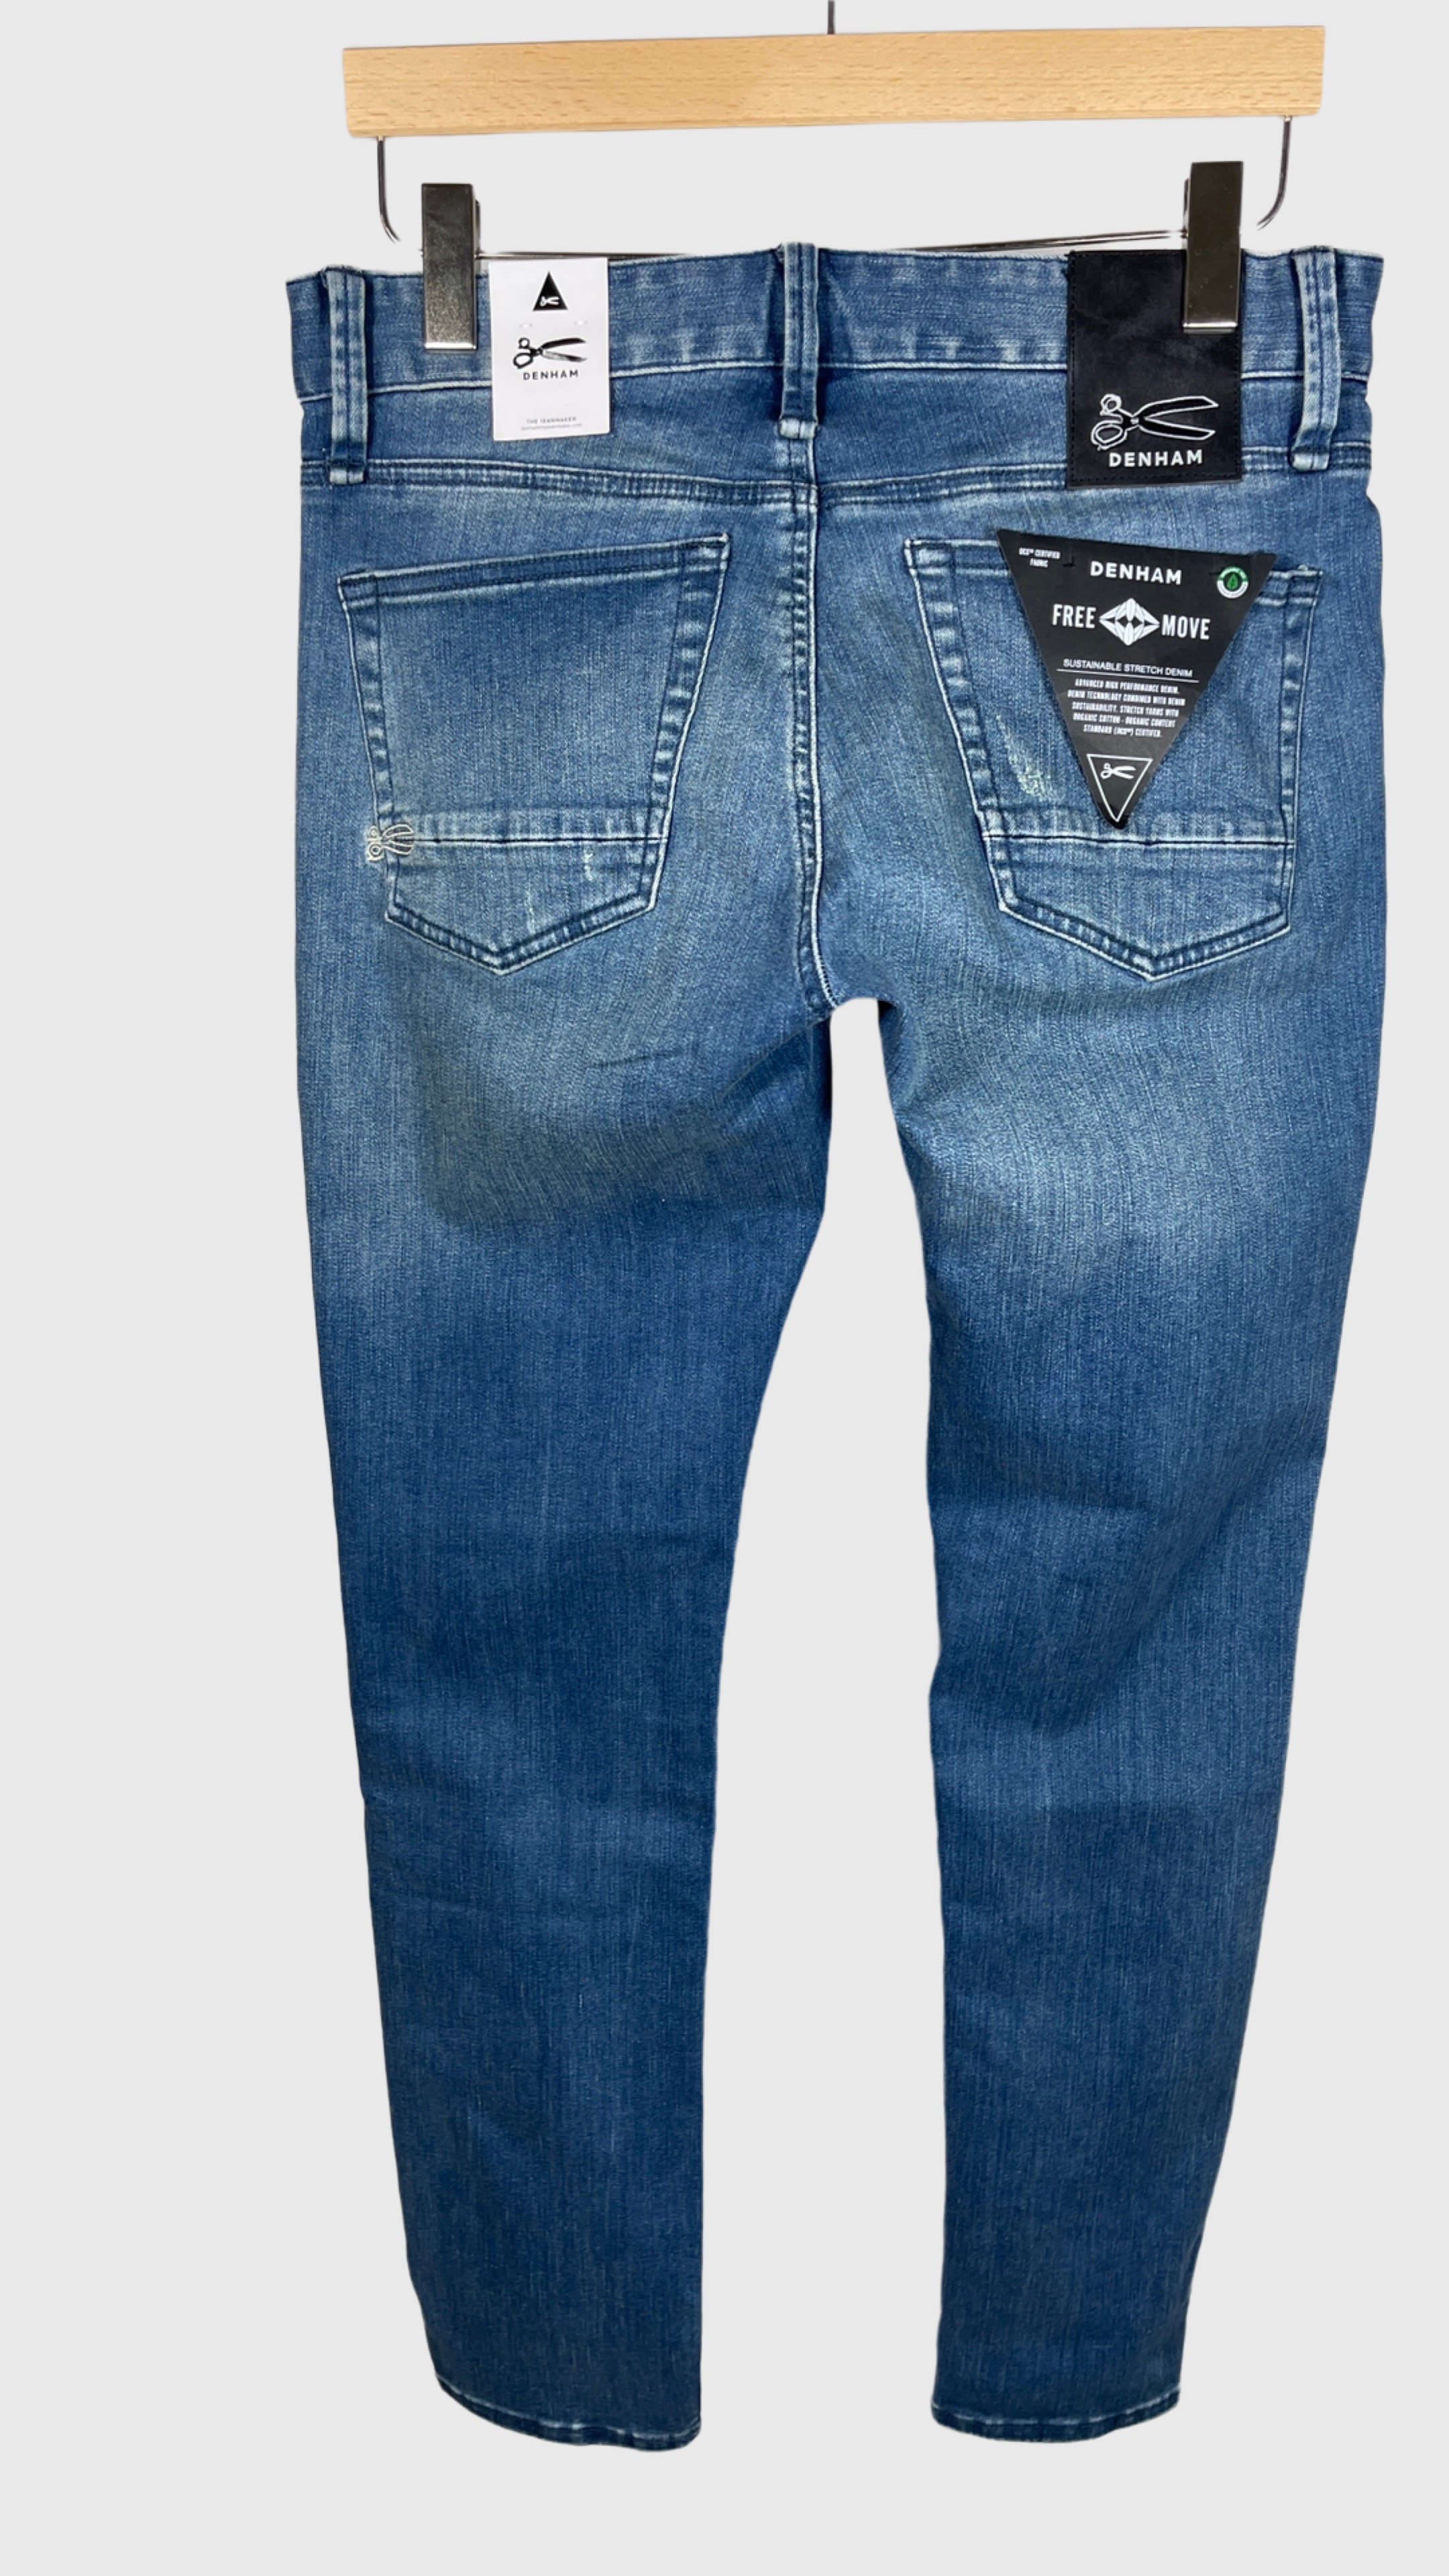 DENHAM 01-21-07-11-016 BOLT BLFMIV Herren Jeans Hellblau Wasched Look Blue